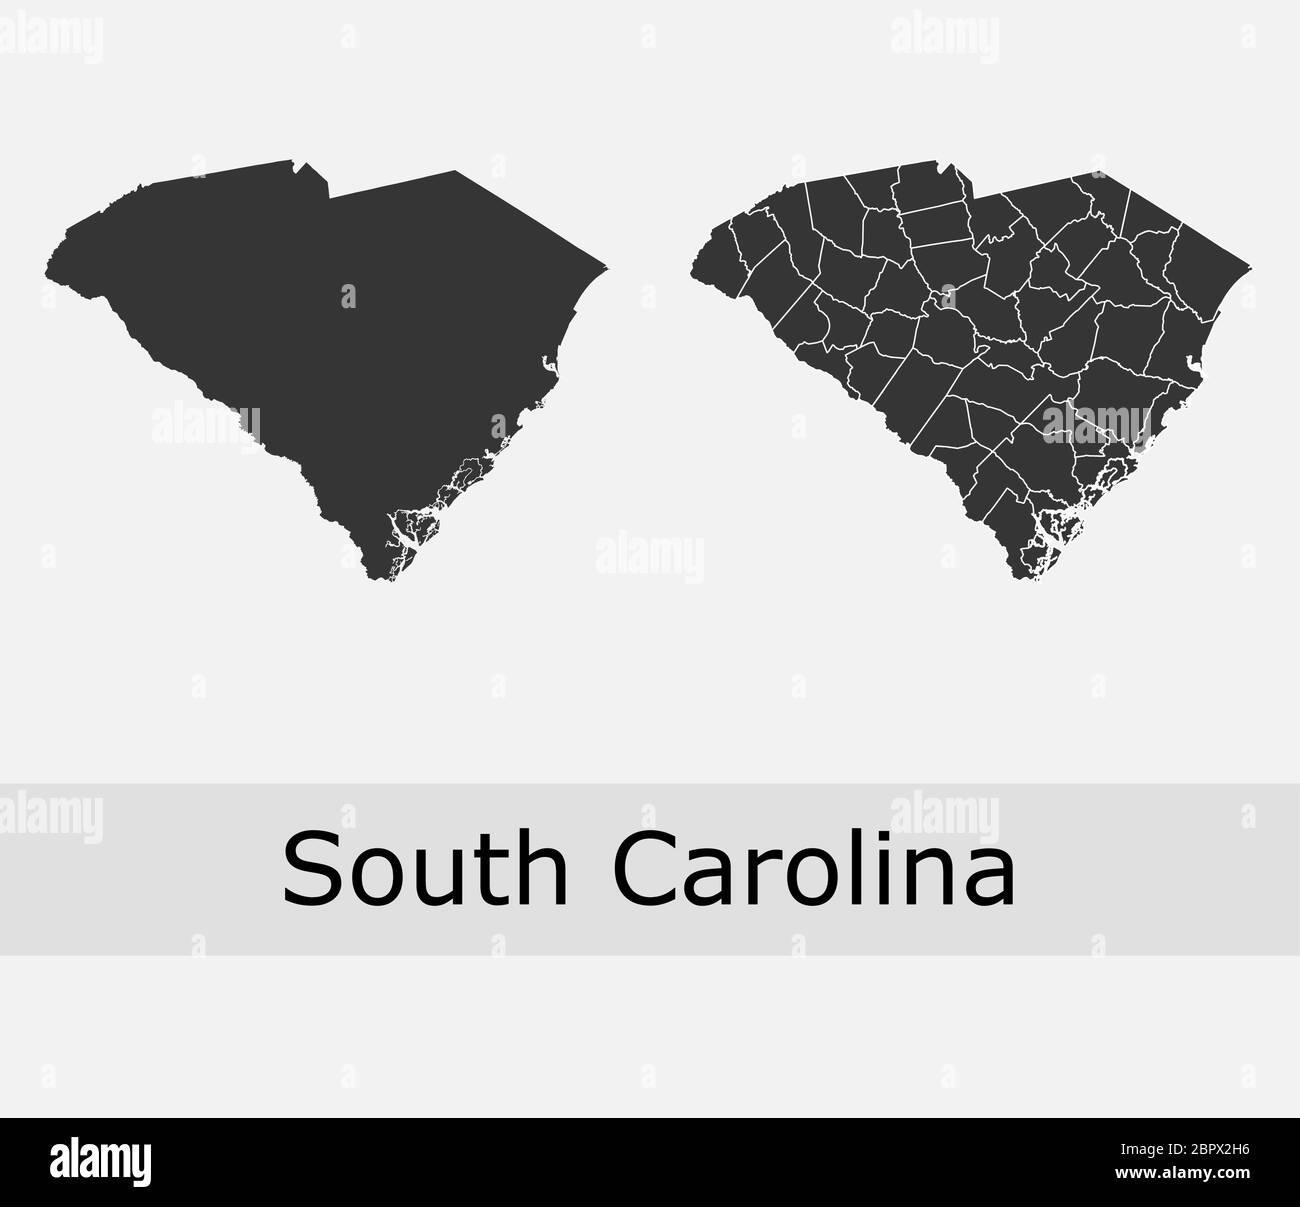 Cartes de Caroline du Sud vectorielles comtés, cantons, régions, municipalités, départements, frontières Illustration de Vecteur